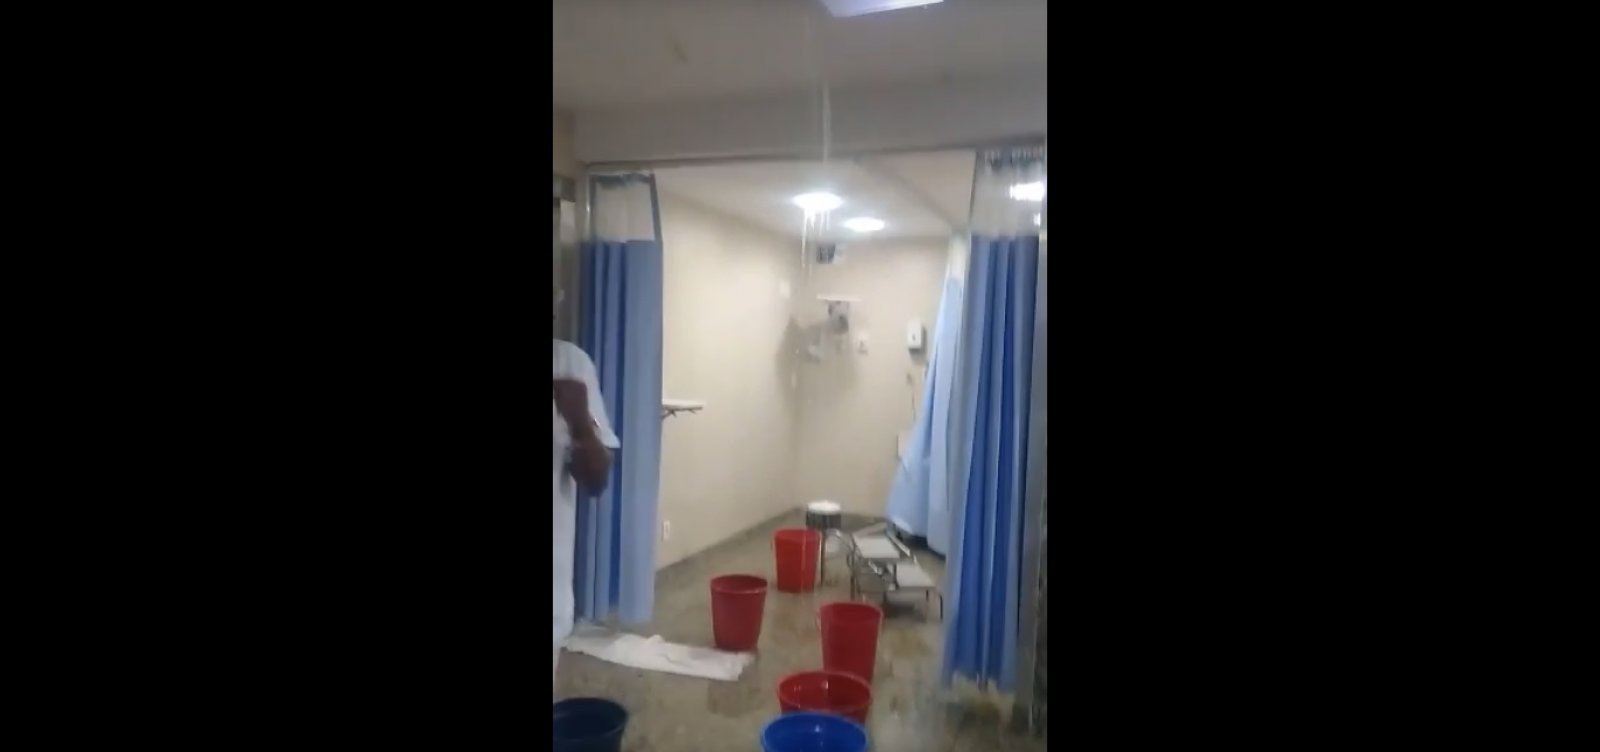 Vídeo mostra Hospital Jorge Valente invadido por água da chuva